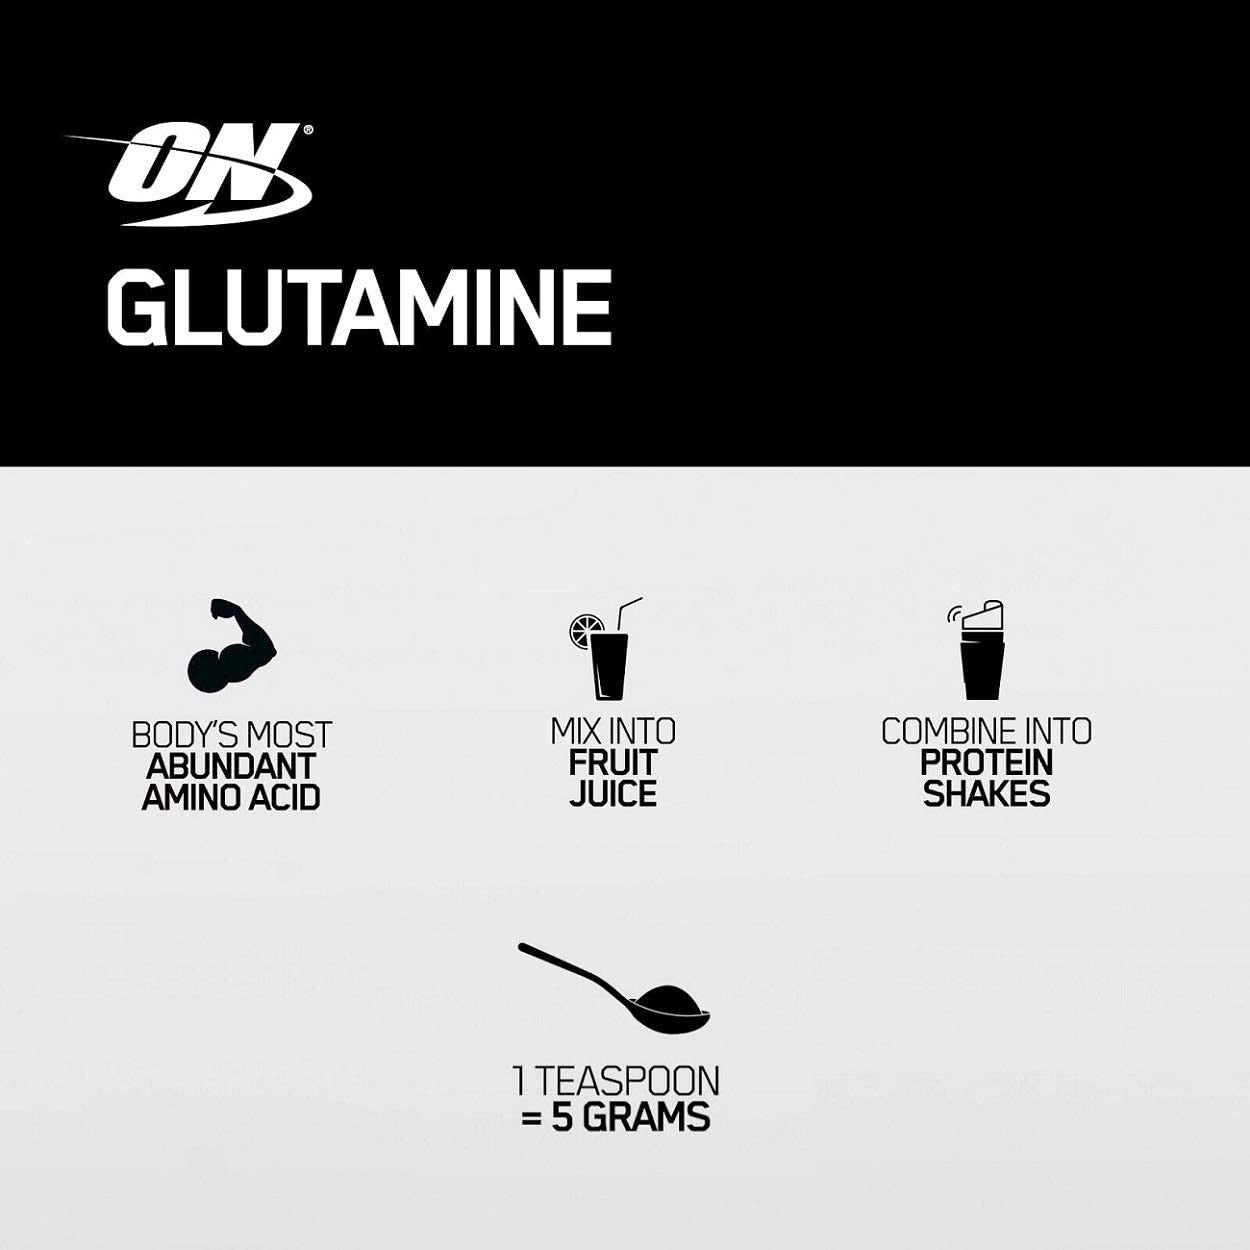 Optimum Nutrition Glutamine Powder Benefits